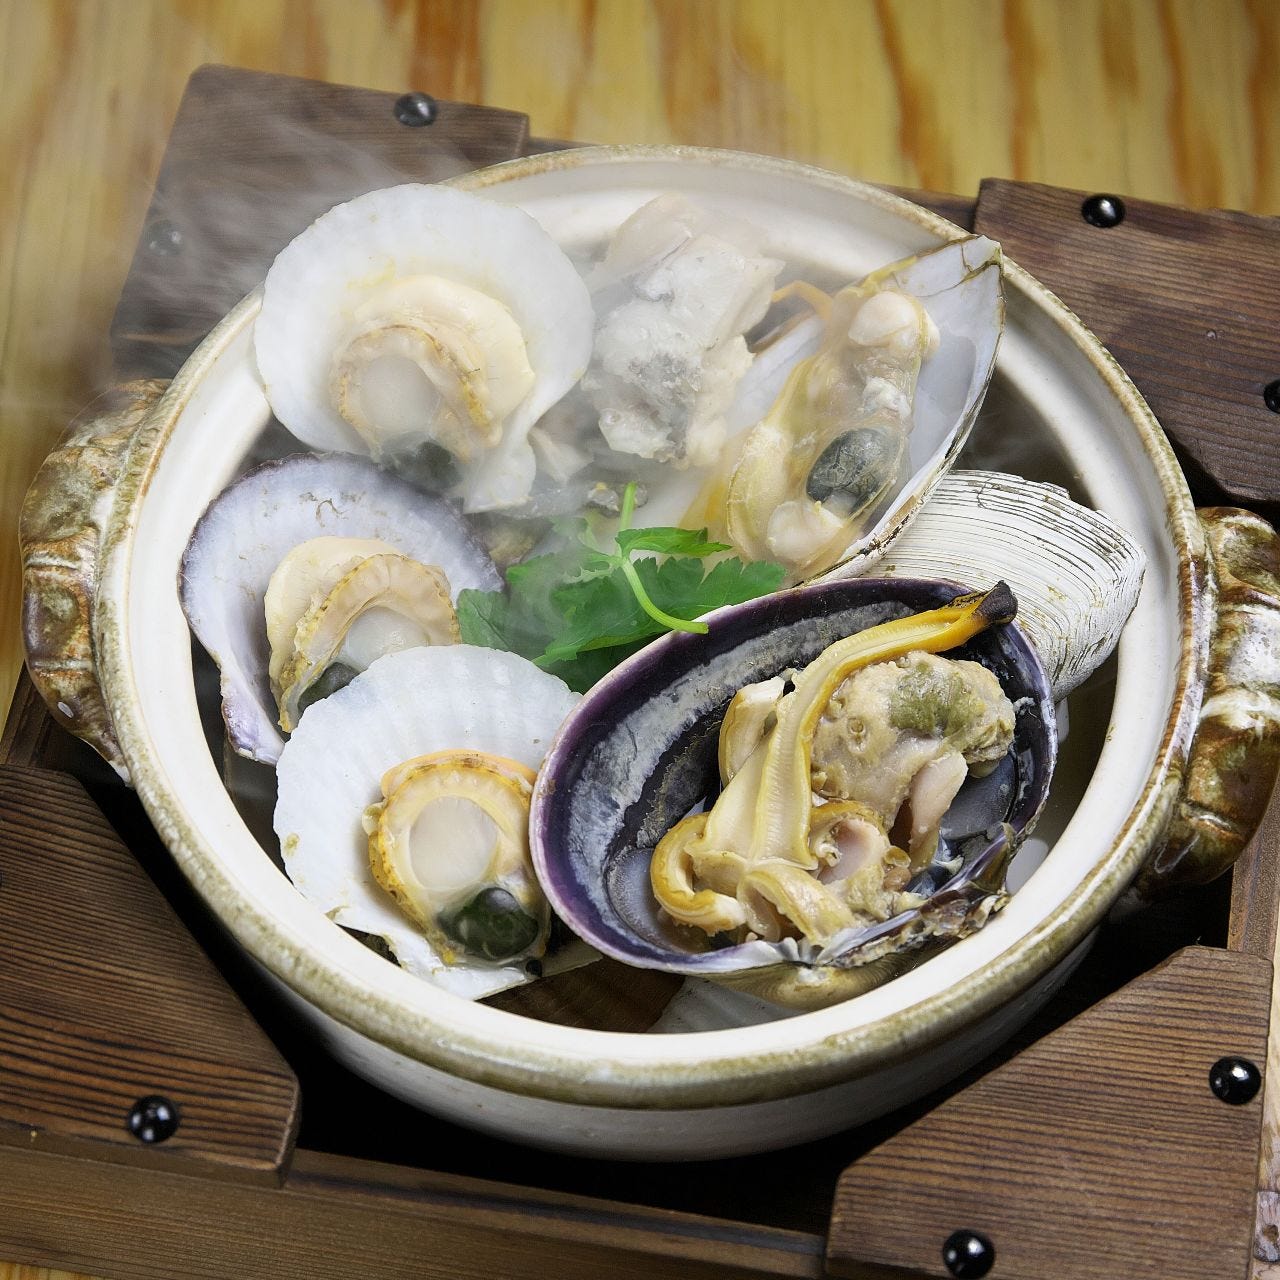 魚貝 雞料理 日本酒とよ新神戶三宮相片 三宮 居酒屋 Gurunavi 日本美食餐廳指南